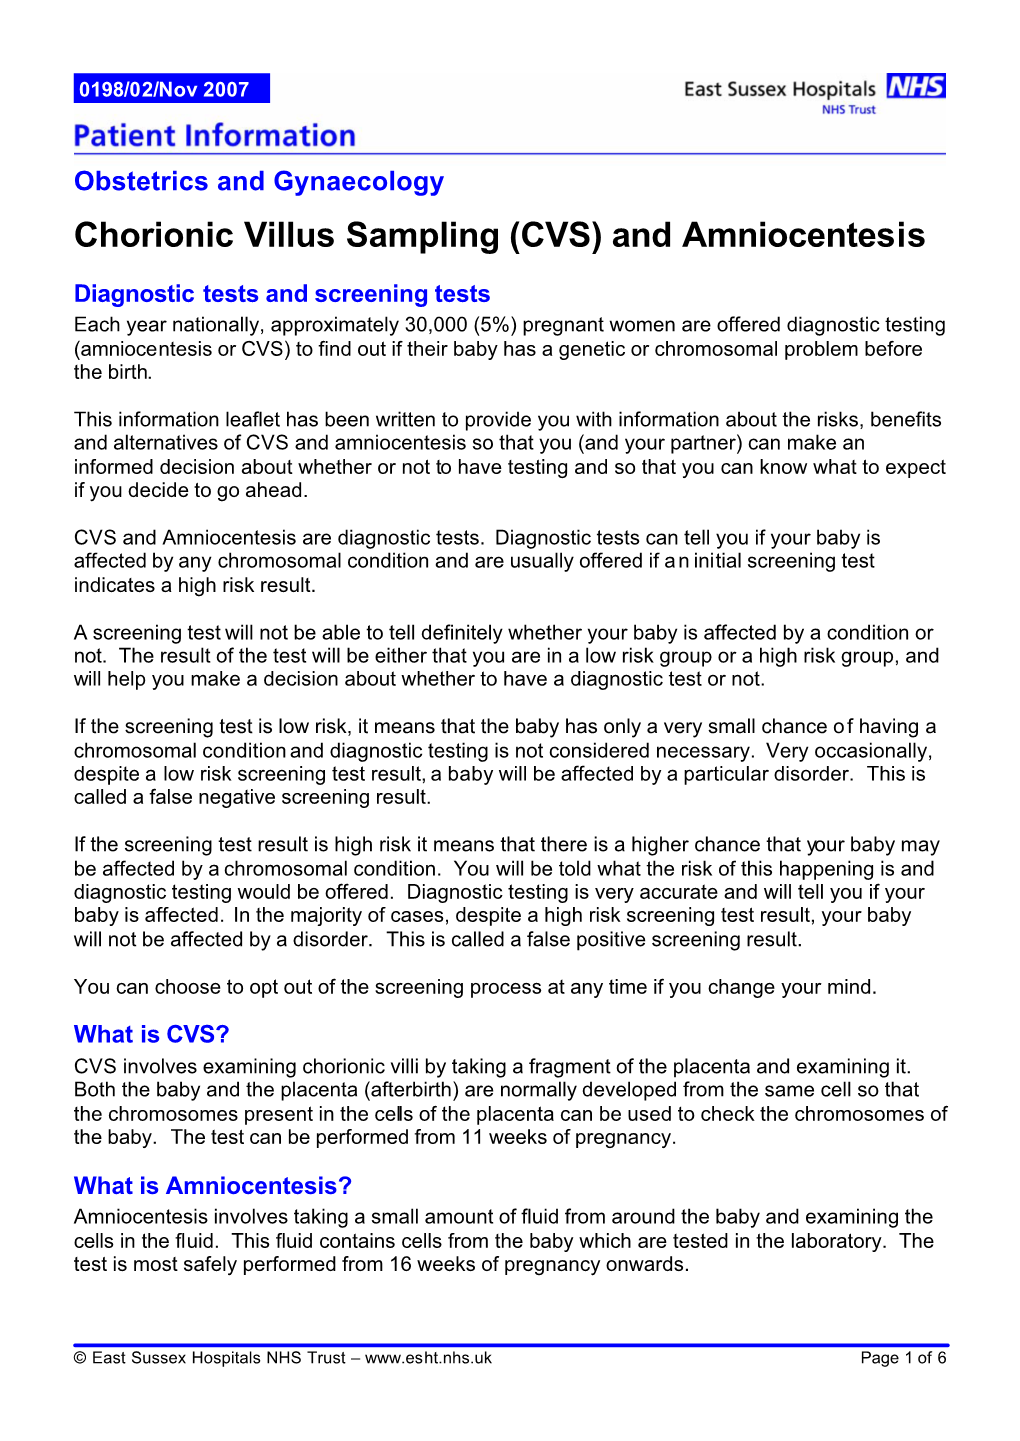 Chorionic Villus Sampling (CVS) and Amniocentesis